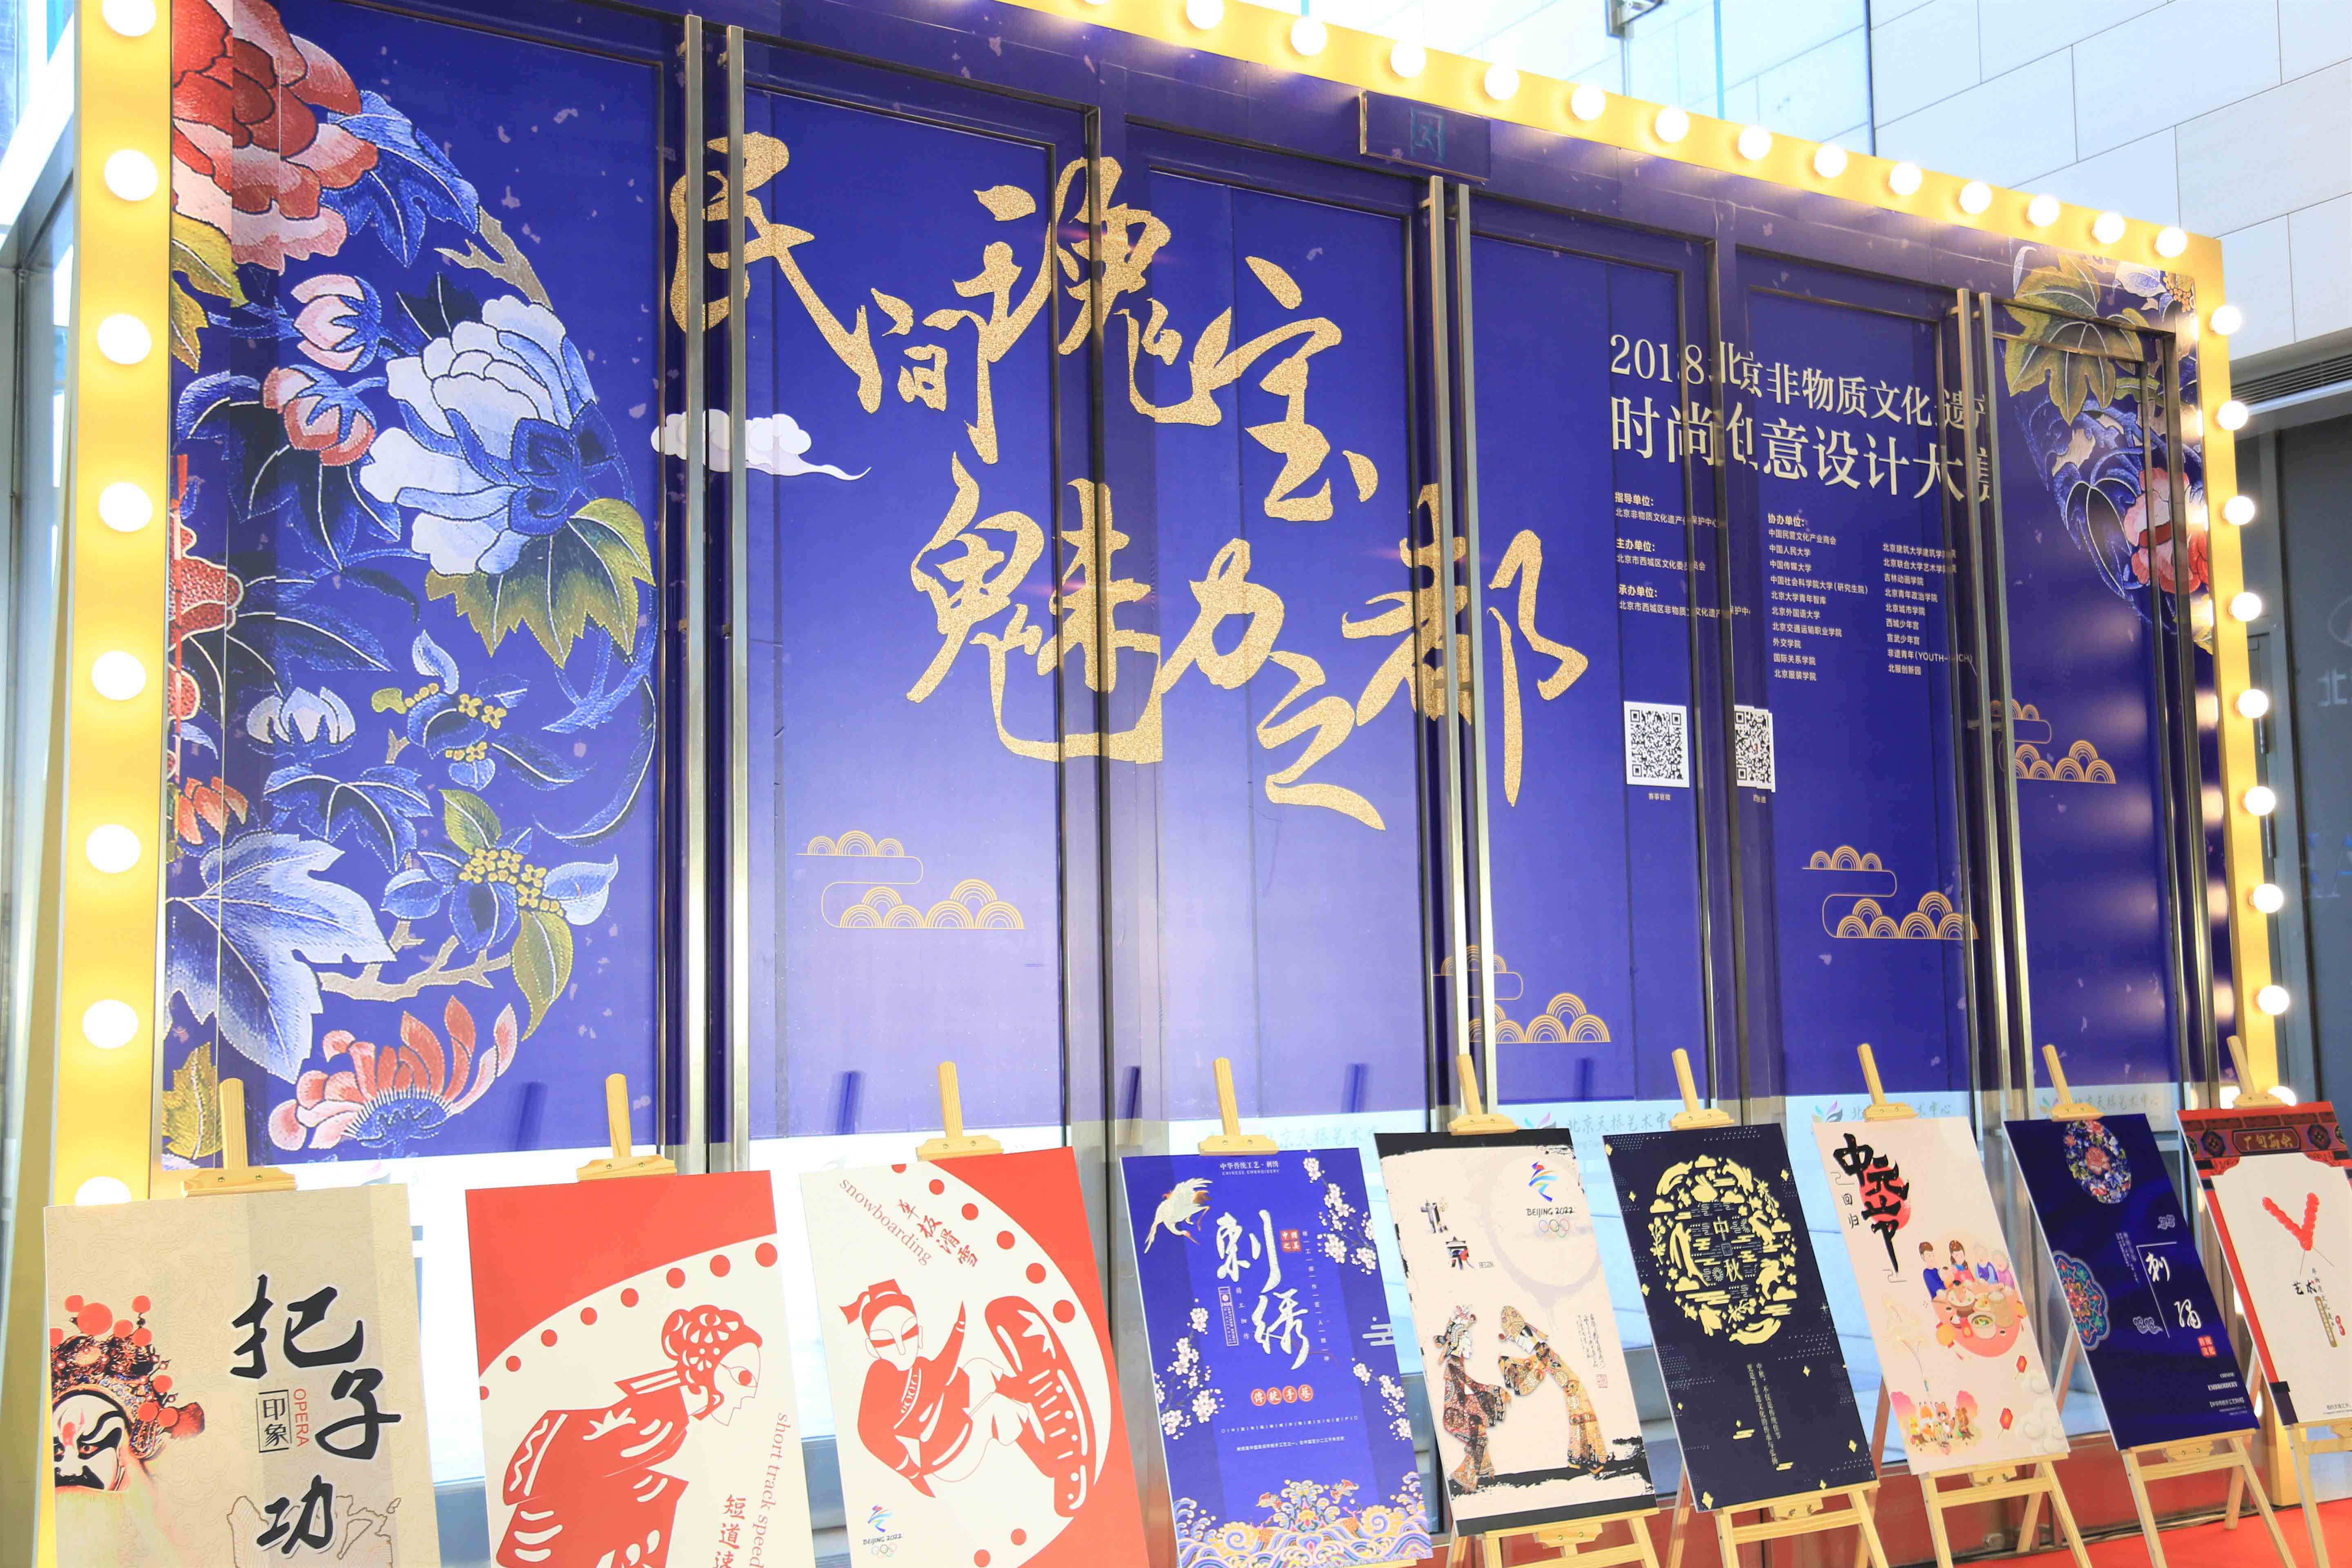 商会活动 | “民间瑰宝 魅力之都” 2018北京非物质文化遗产时尚创意设计大赛